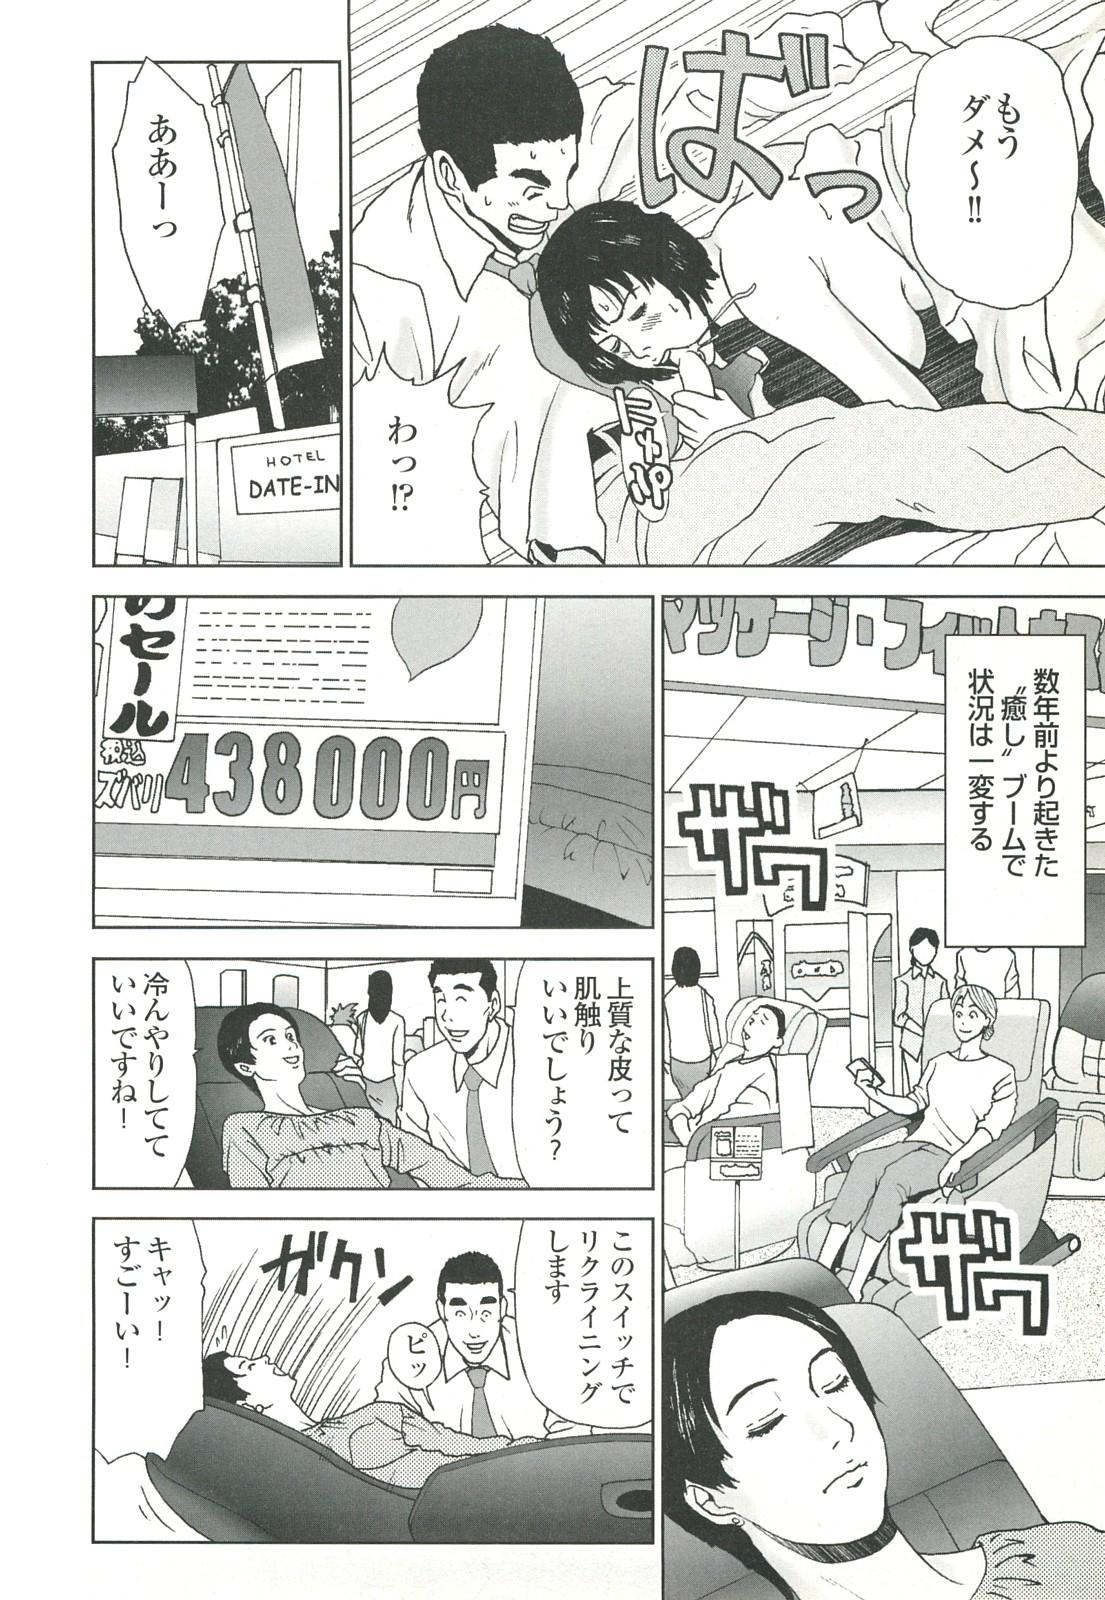 コミック裏モノJAPAN Vol.18 今井のりたつスペシャル号 81